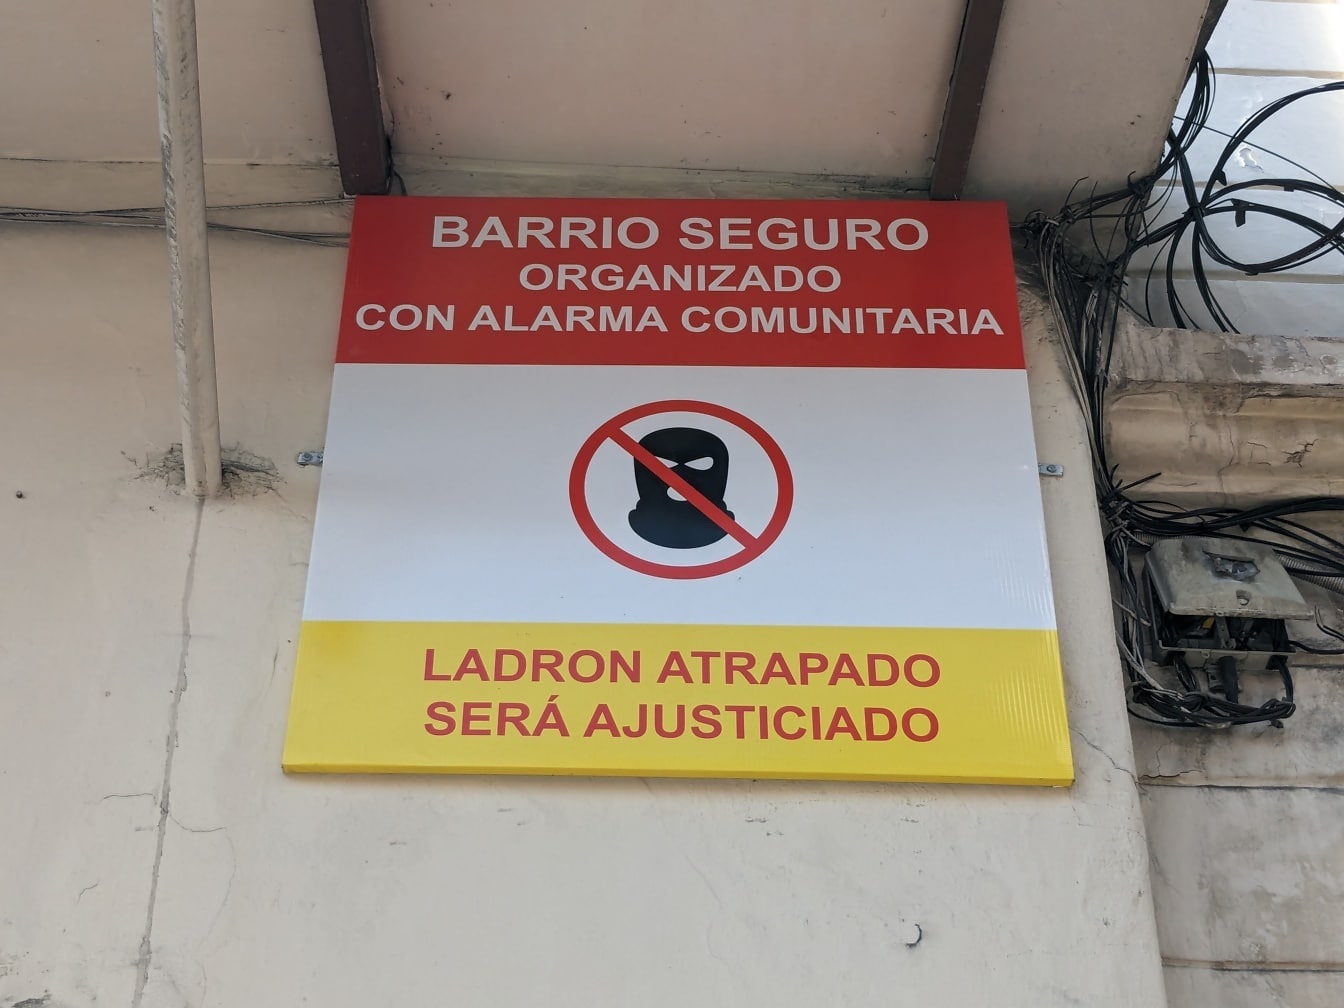 Duvarda hırsızlara ve hırsızlara karşı İspanyolca yazıtlı bir işaret